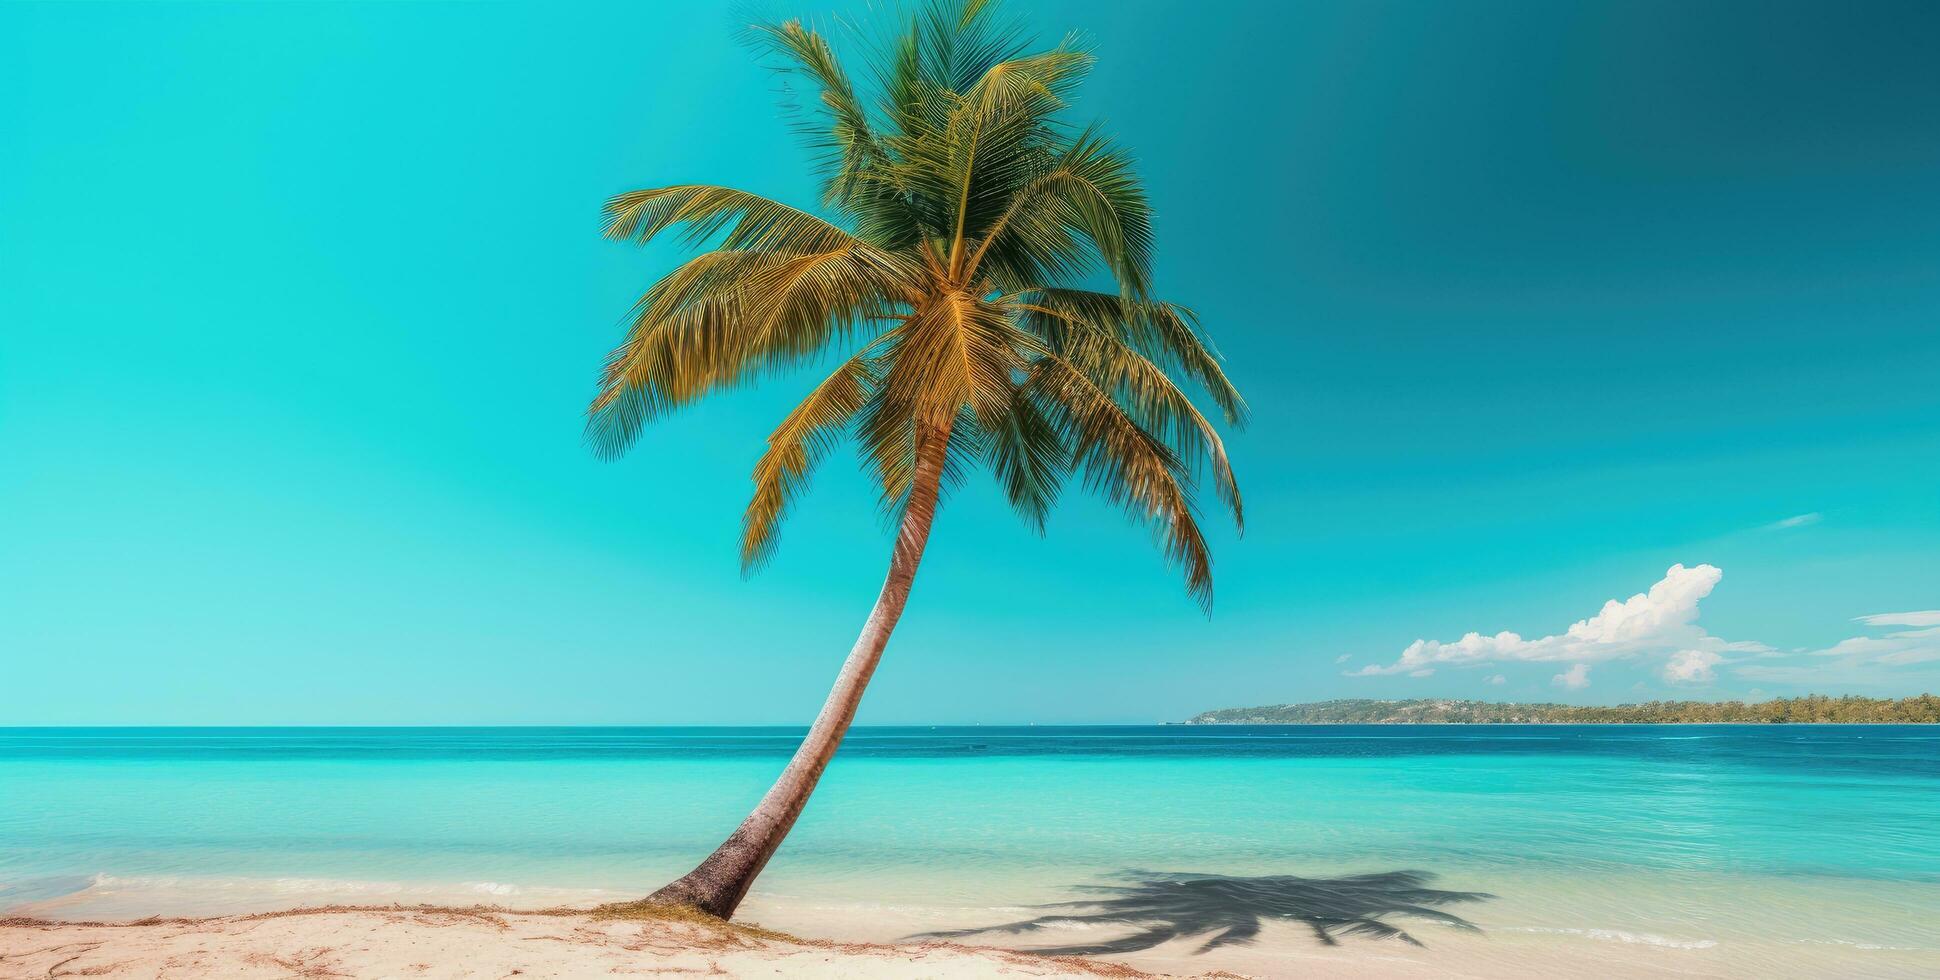 AI generated a palm tree at the beach beach photo